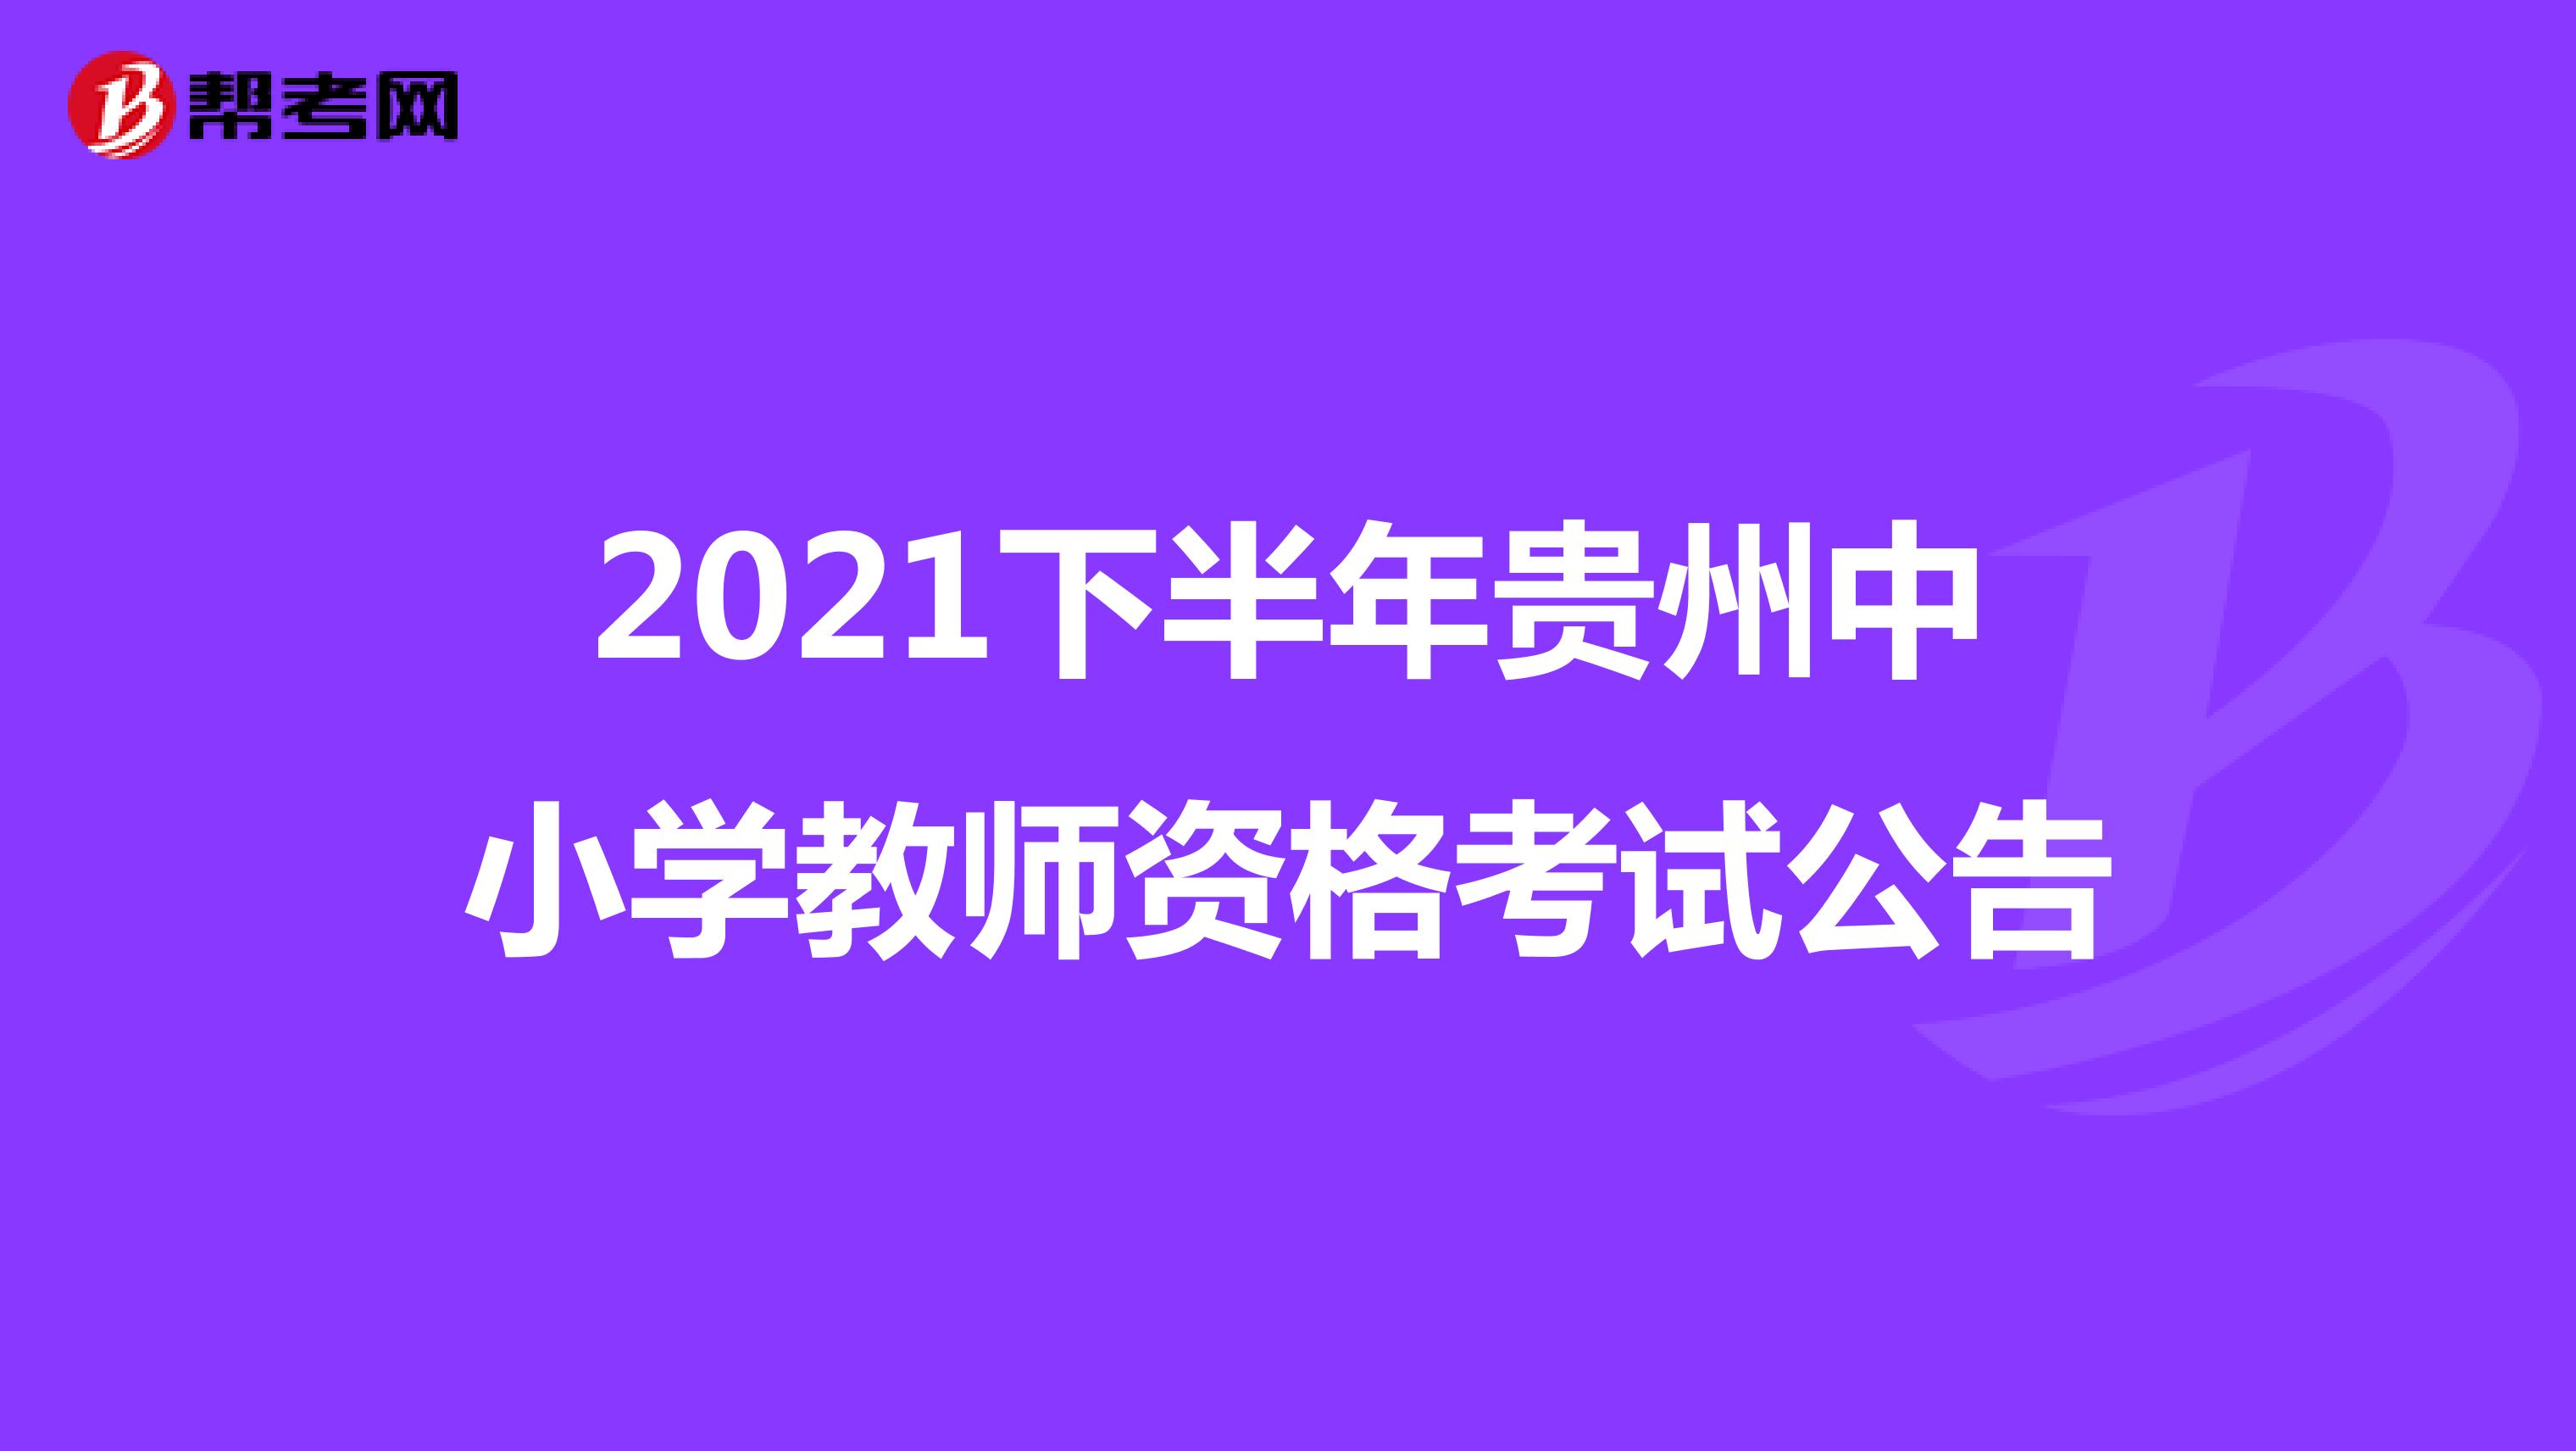 2021下半年贵州中小学教师资格考试公告